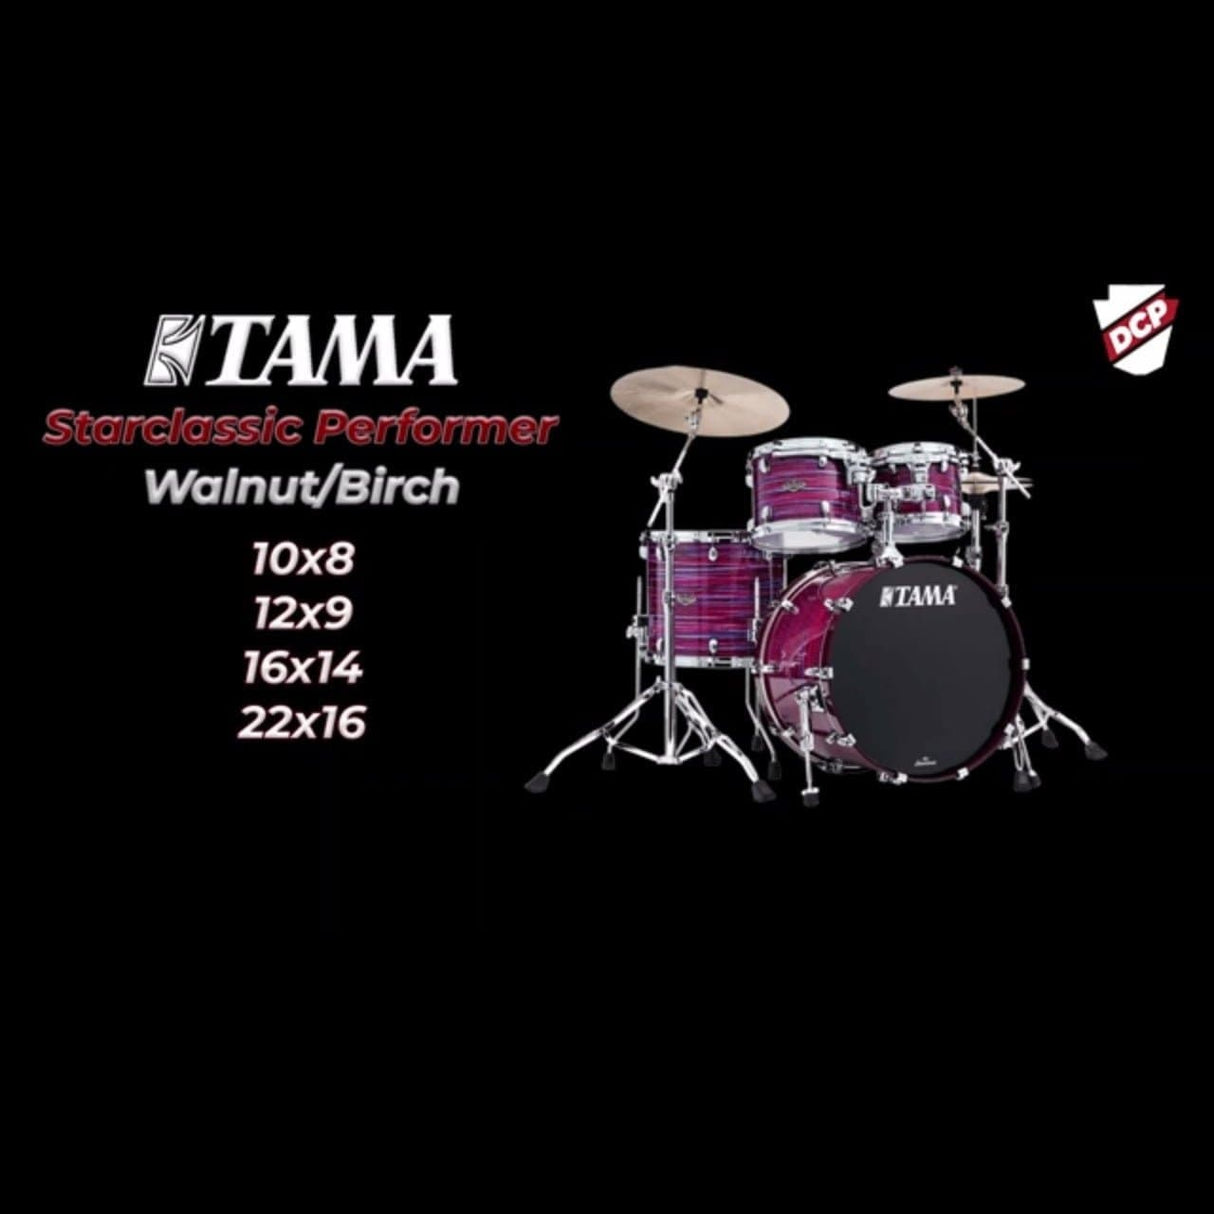 Tama WBR52LSCCO Starclassic Walnut/Birch 5pc Drum Set Charcoal Onyx